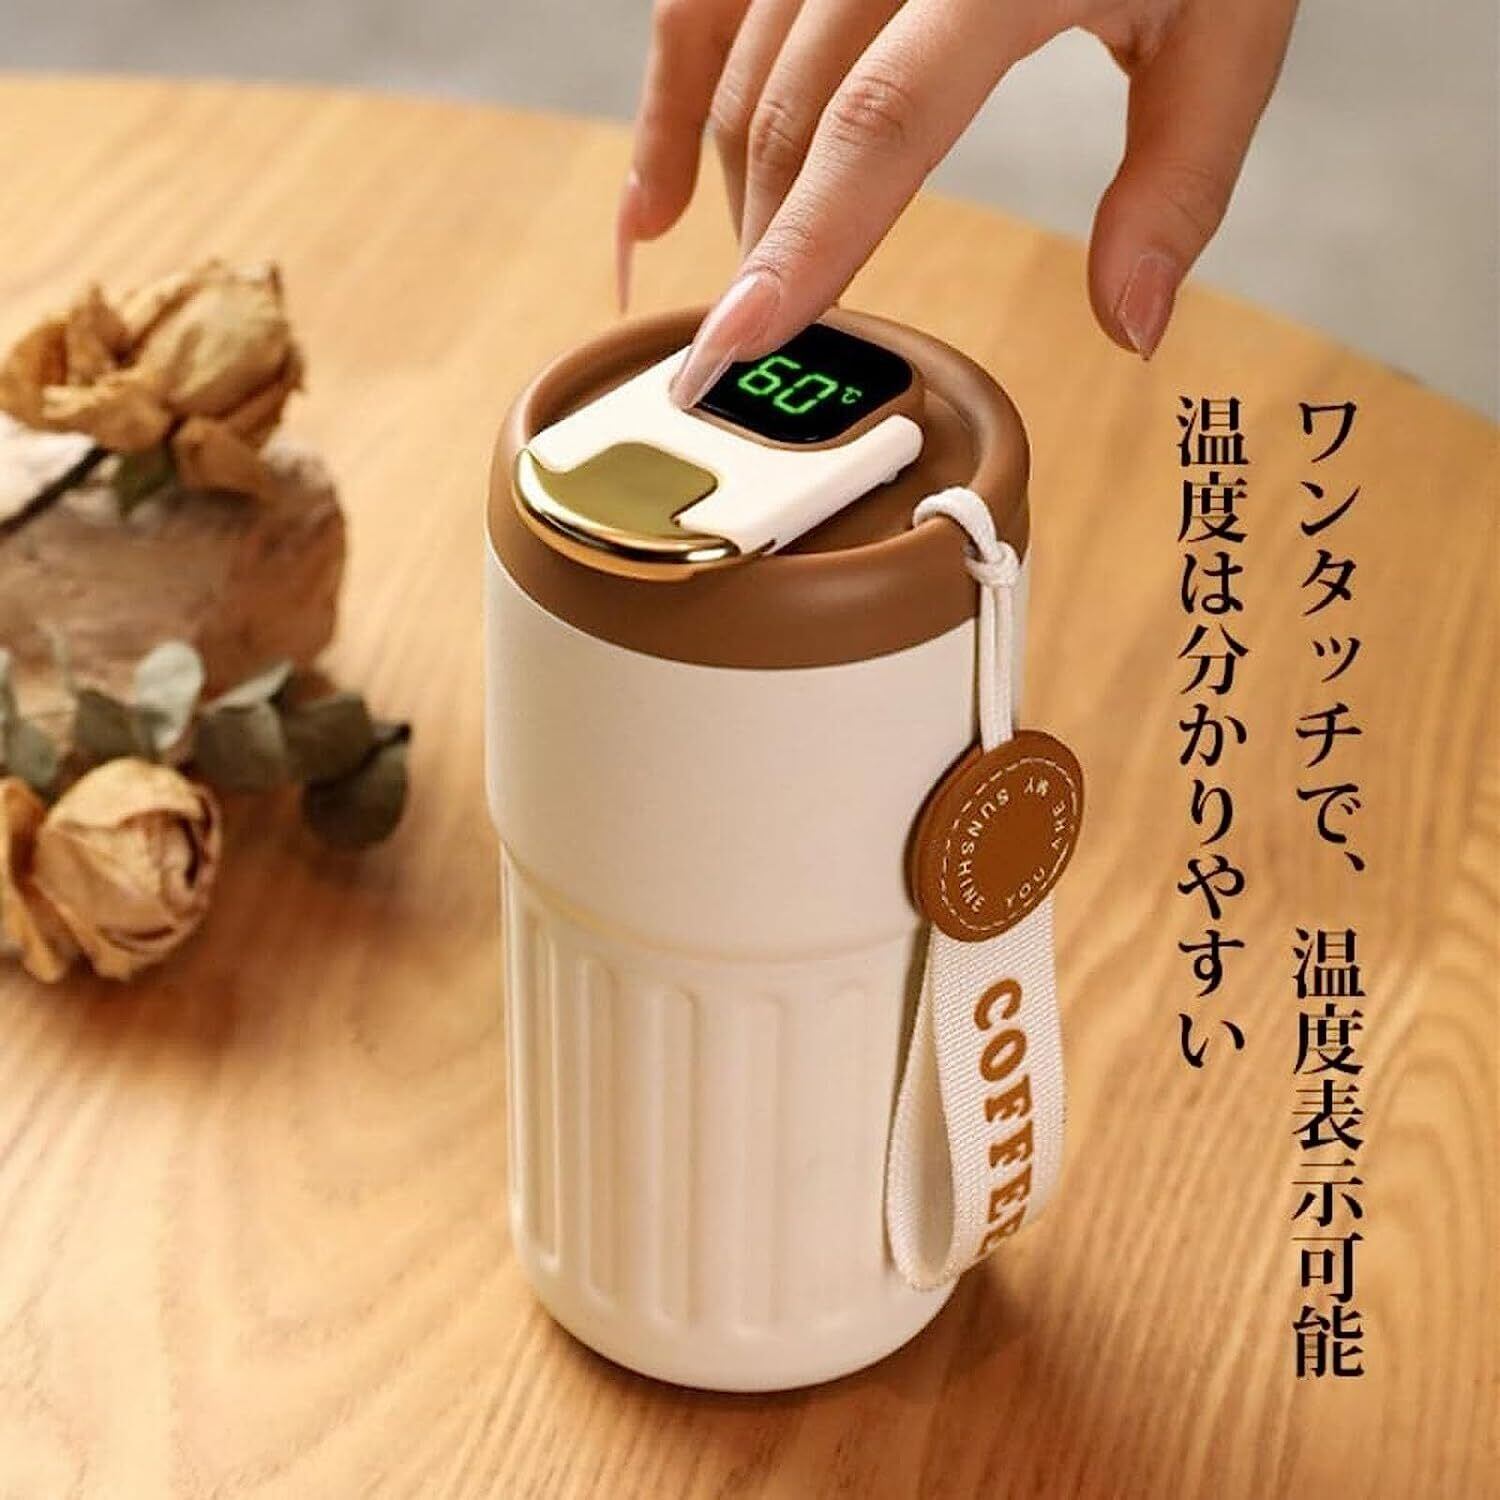 コーヒー魔法瓶 450ML コーヒー魔法瓶 Coffee 温度計 魔法瓶